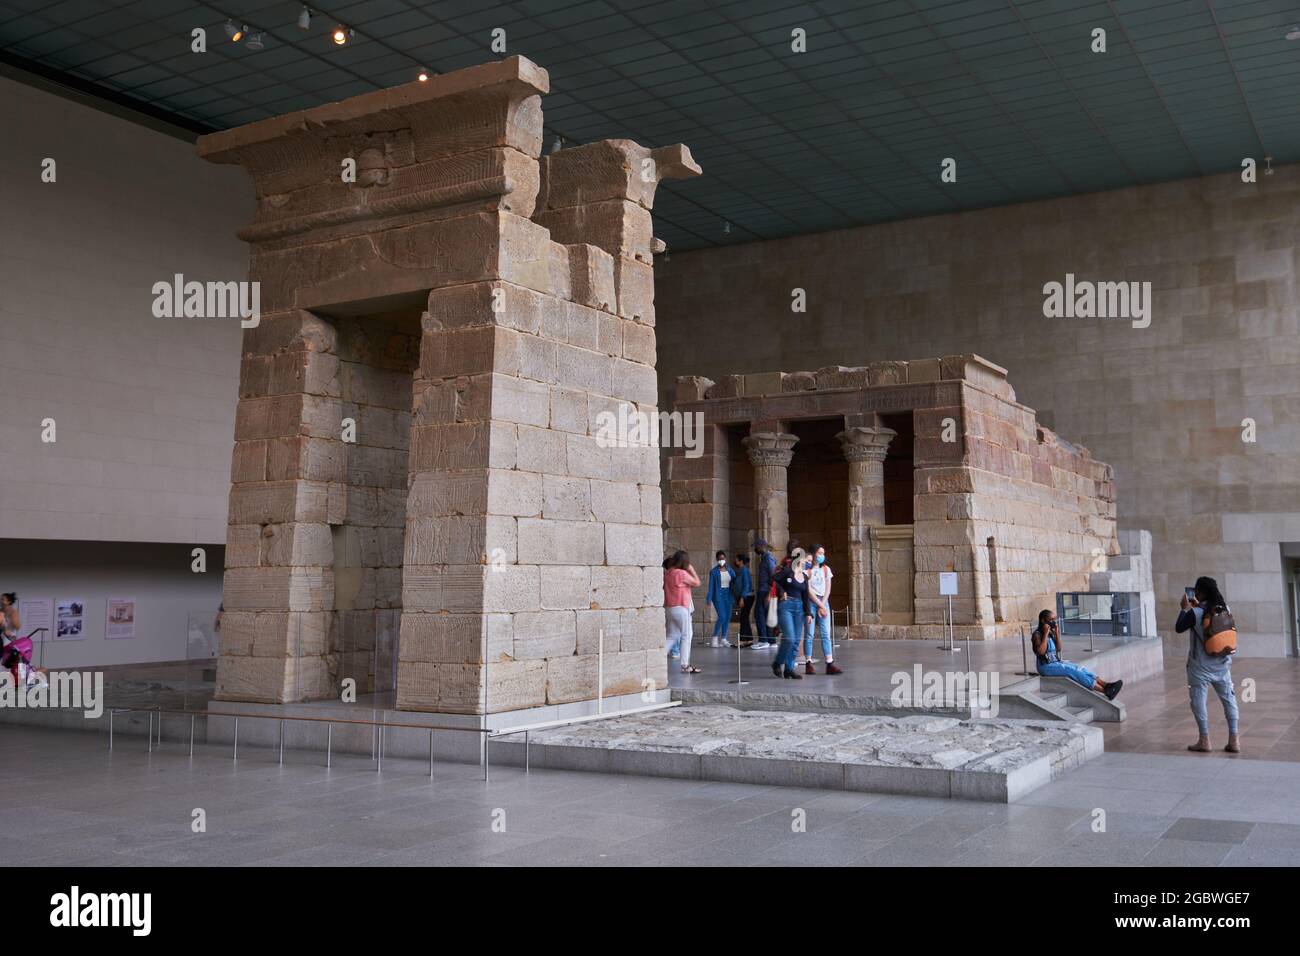 Le Temple de Dendur au Metropolitan Museum of Art de New York Banque D'Images